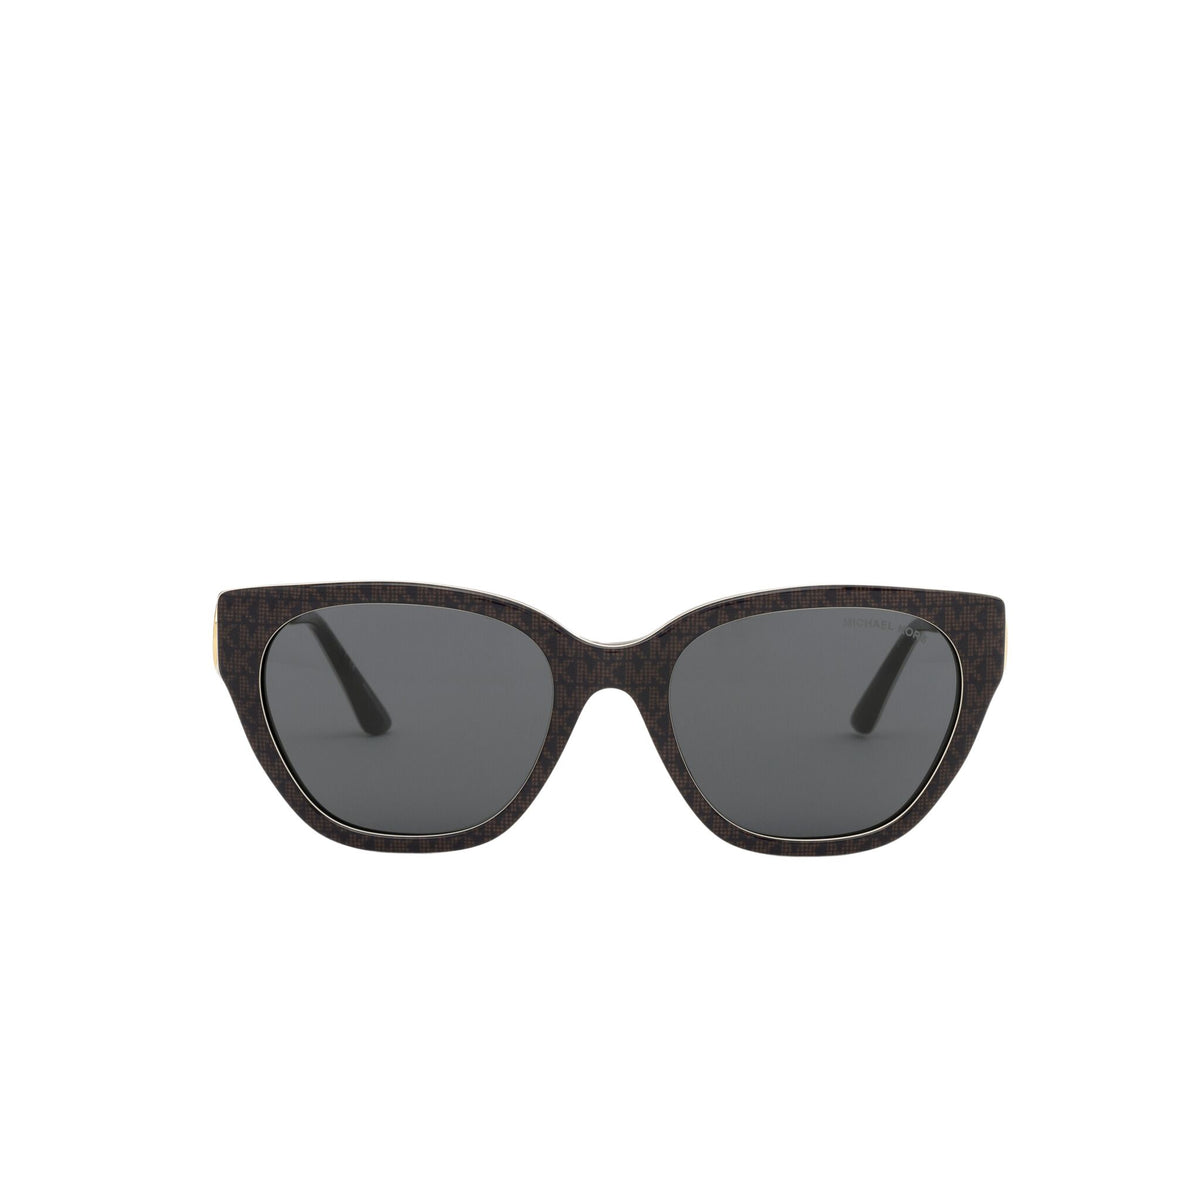 MICHAEL KORS 0MK2154 Sunglasses Michael Kors 54 370687 - BROWN SIGNATURE PVC Grey